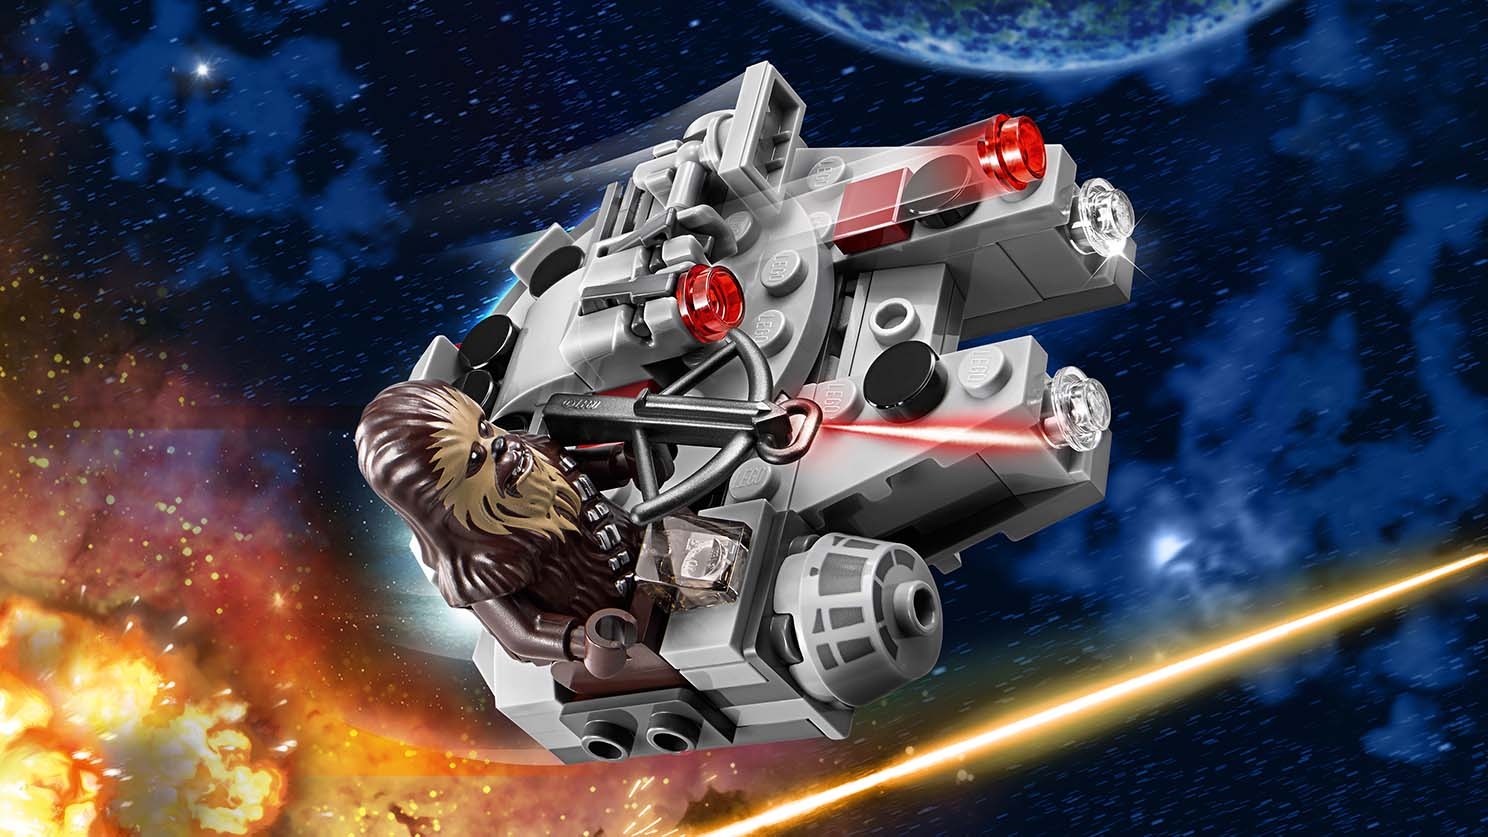 Star wars Space wars 4 set Microfighters spaceship.